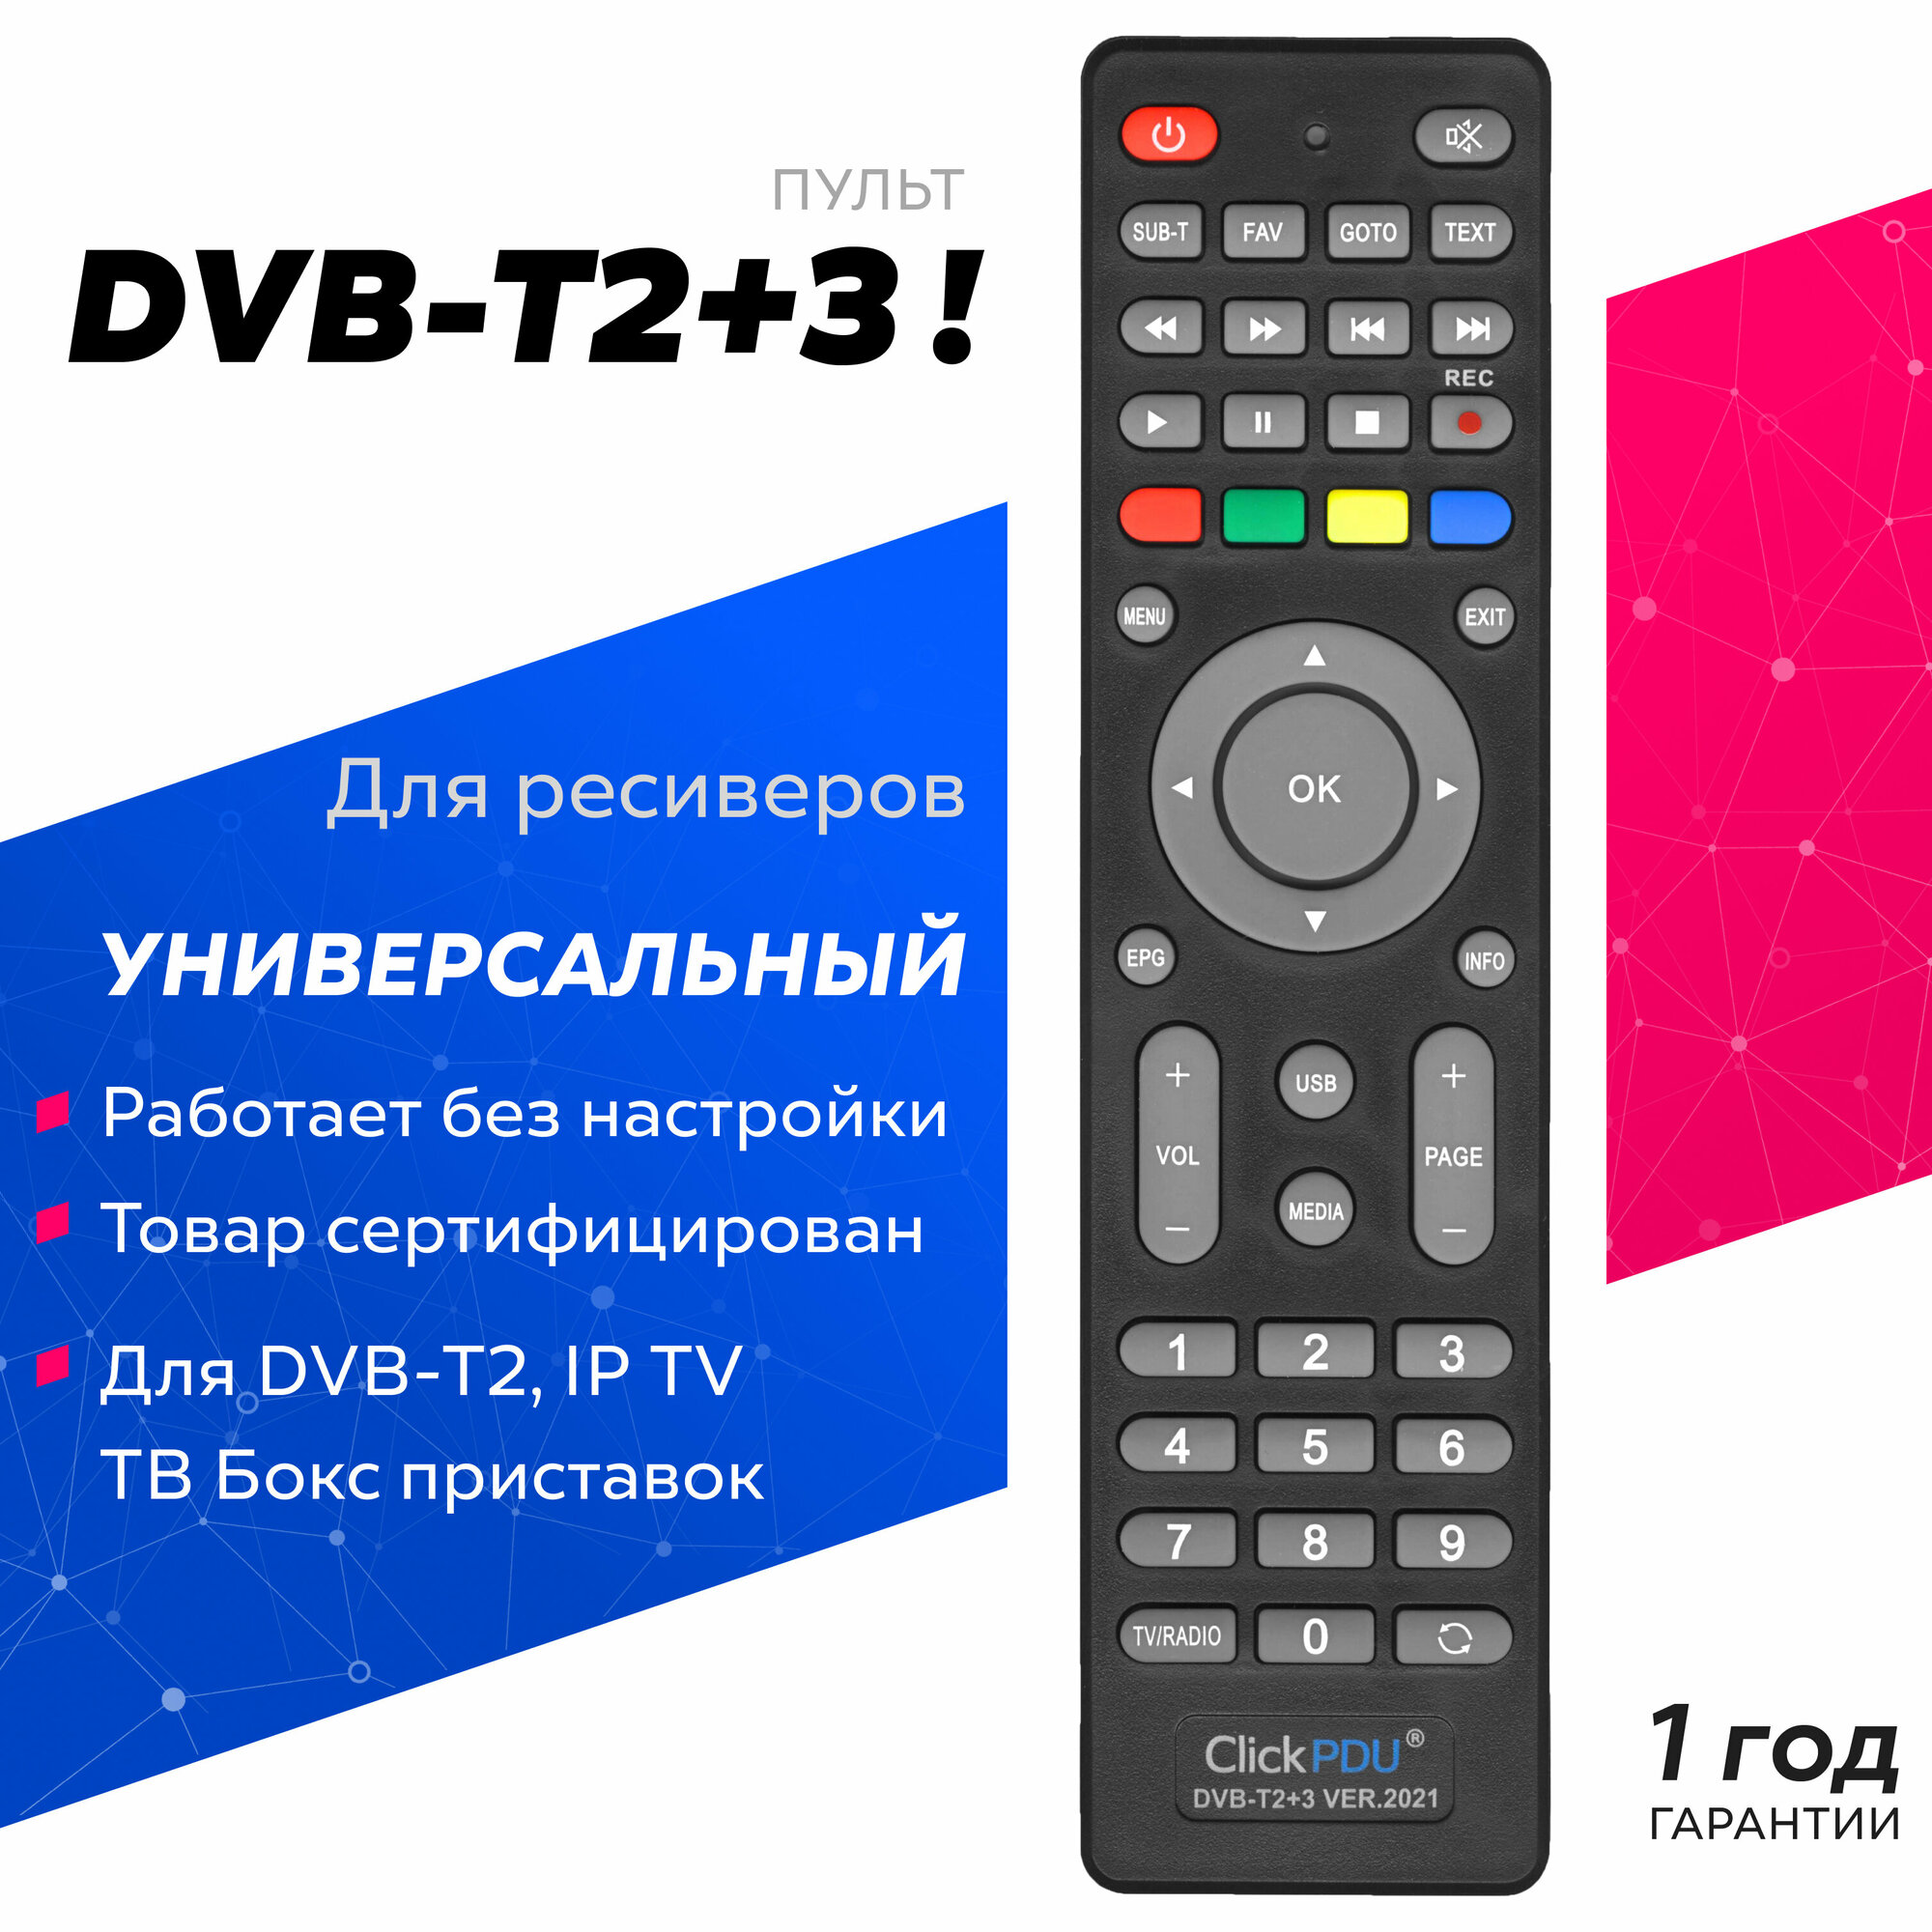 Универсальный пульт ClickPdu DVB-T2+3 для DVB-T2 приставок ресиверов и IP TV. Версия 2021 года!